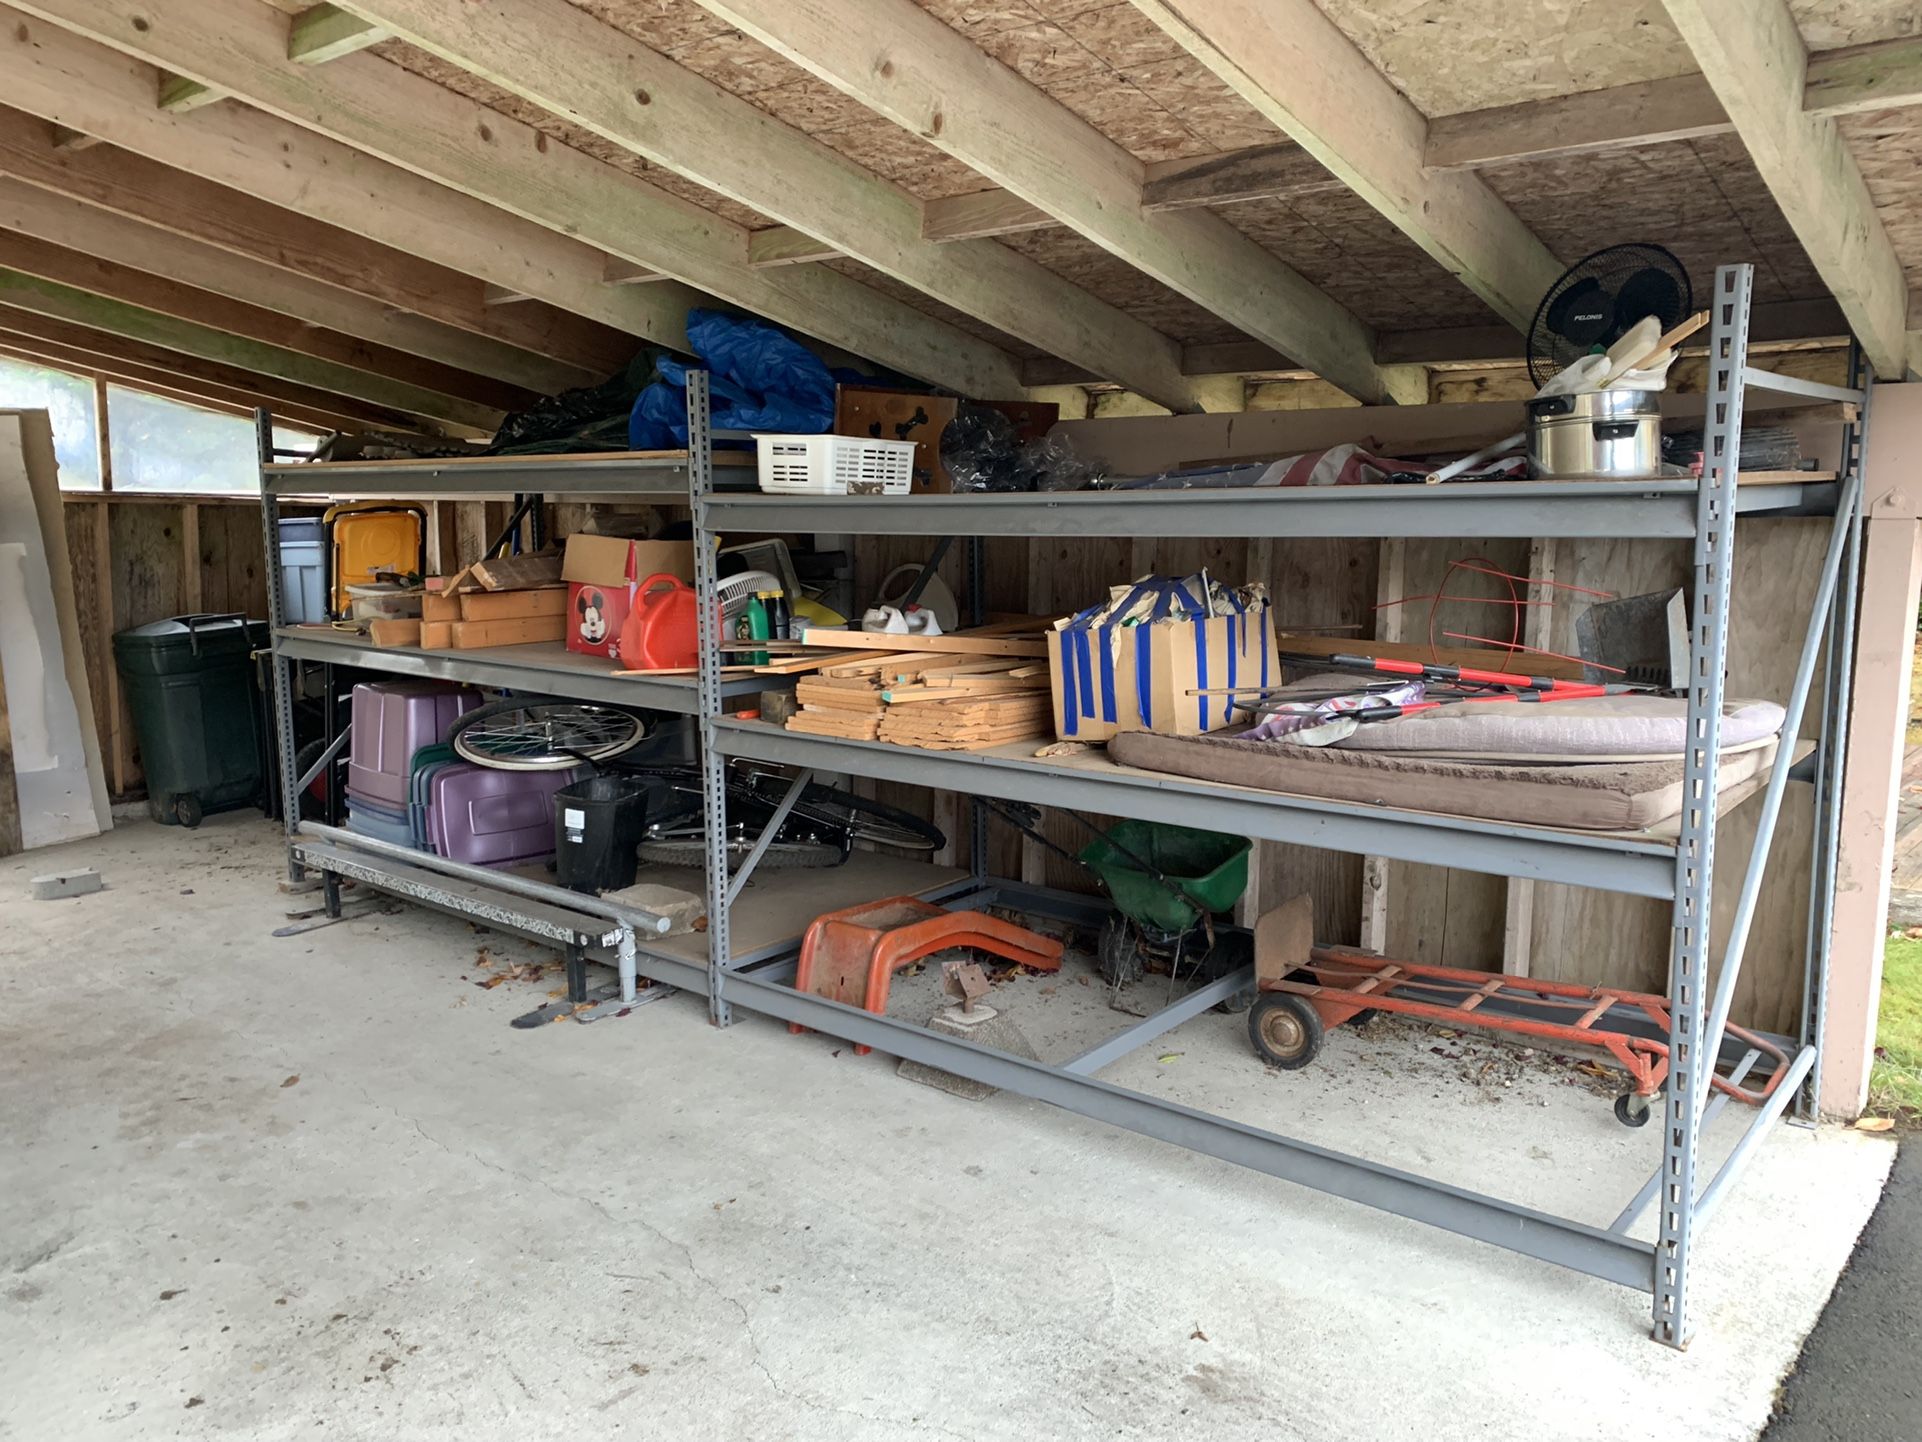 Garage Storage Shelves 